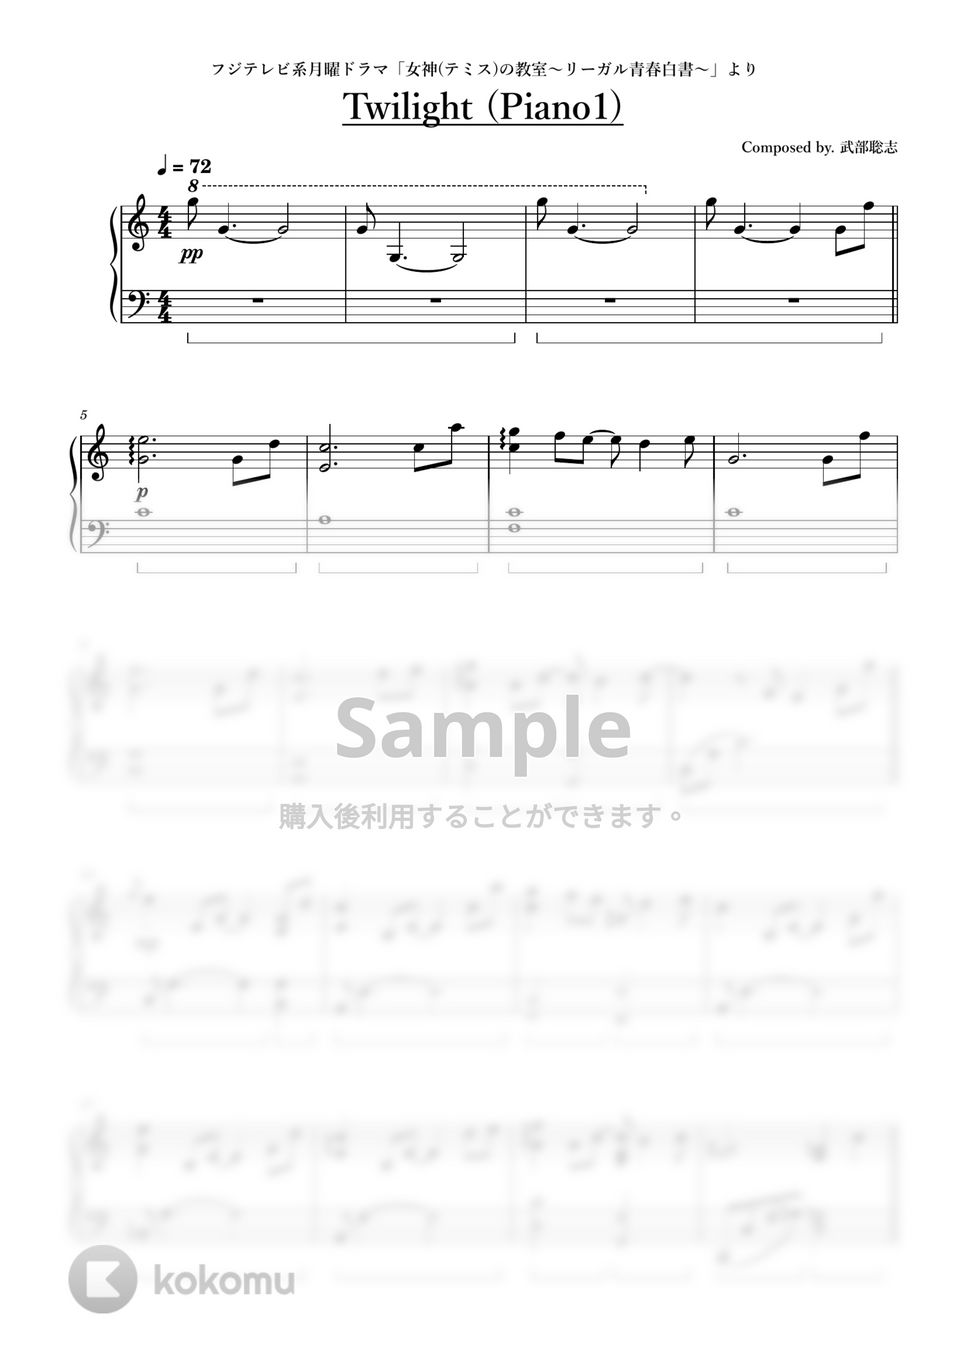 ドラマ「女神(テミス)の教室～リーガル青春白書～」より - Twilight (Piano1) by ちゃんRINA。